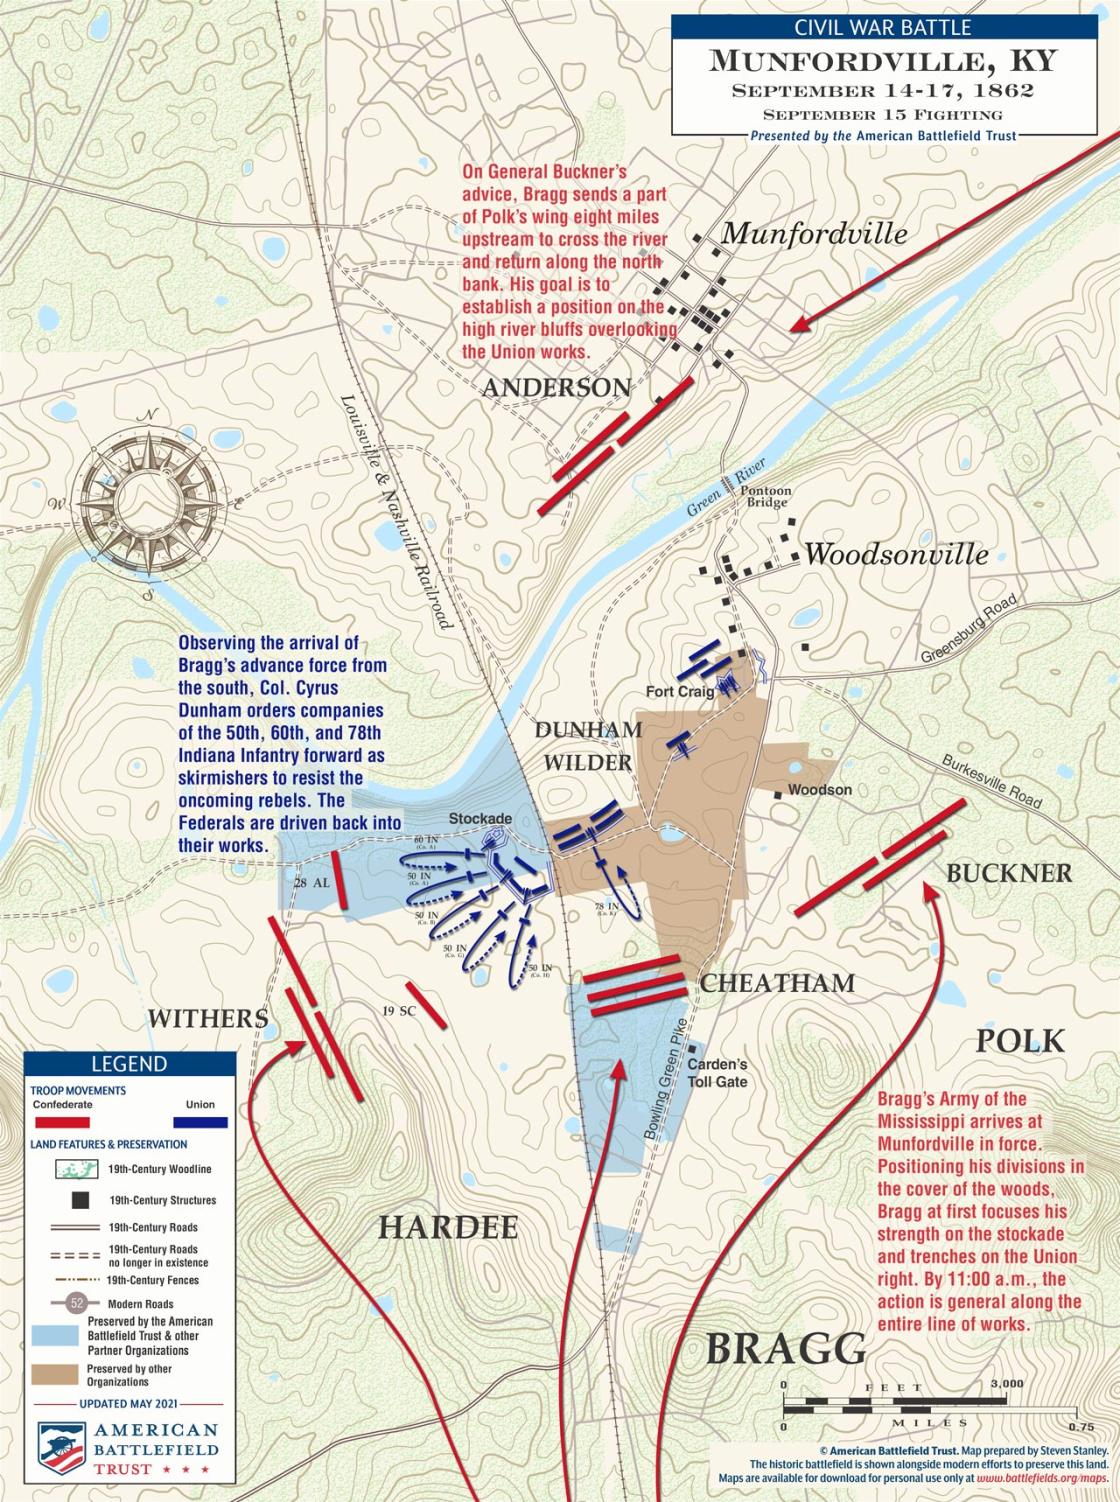 Munfordville | Sept 15, 1862 Battle Map